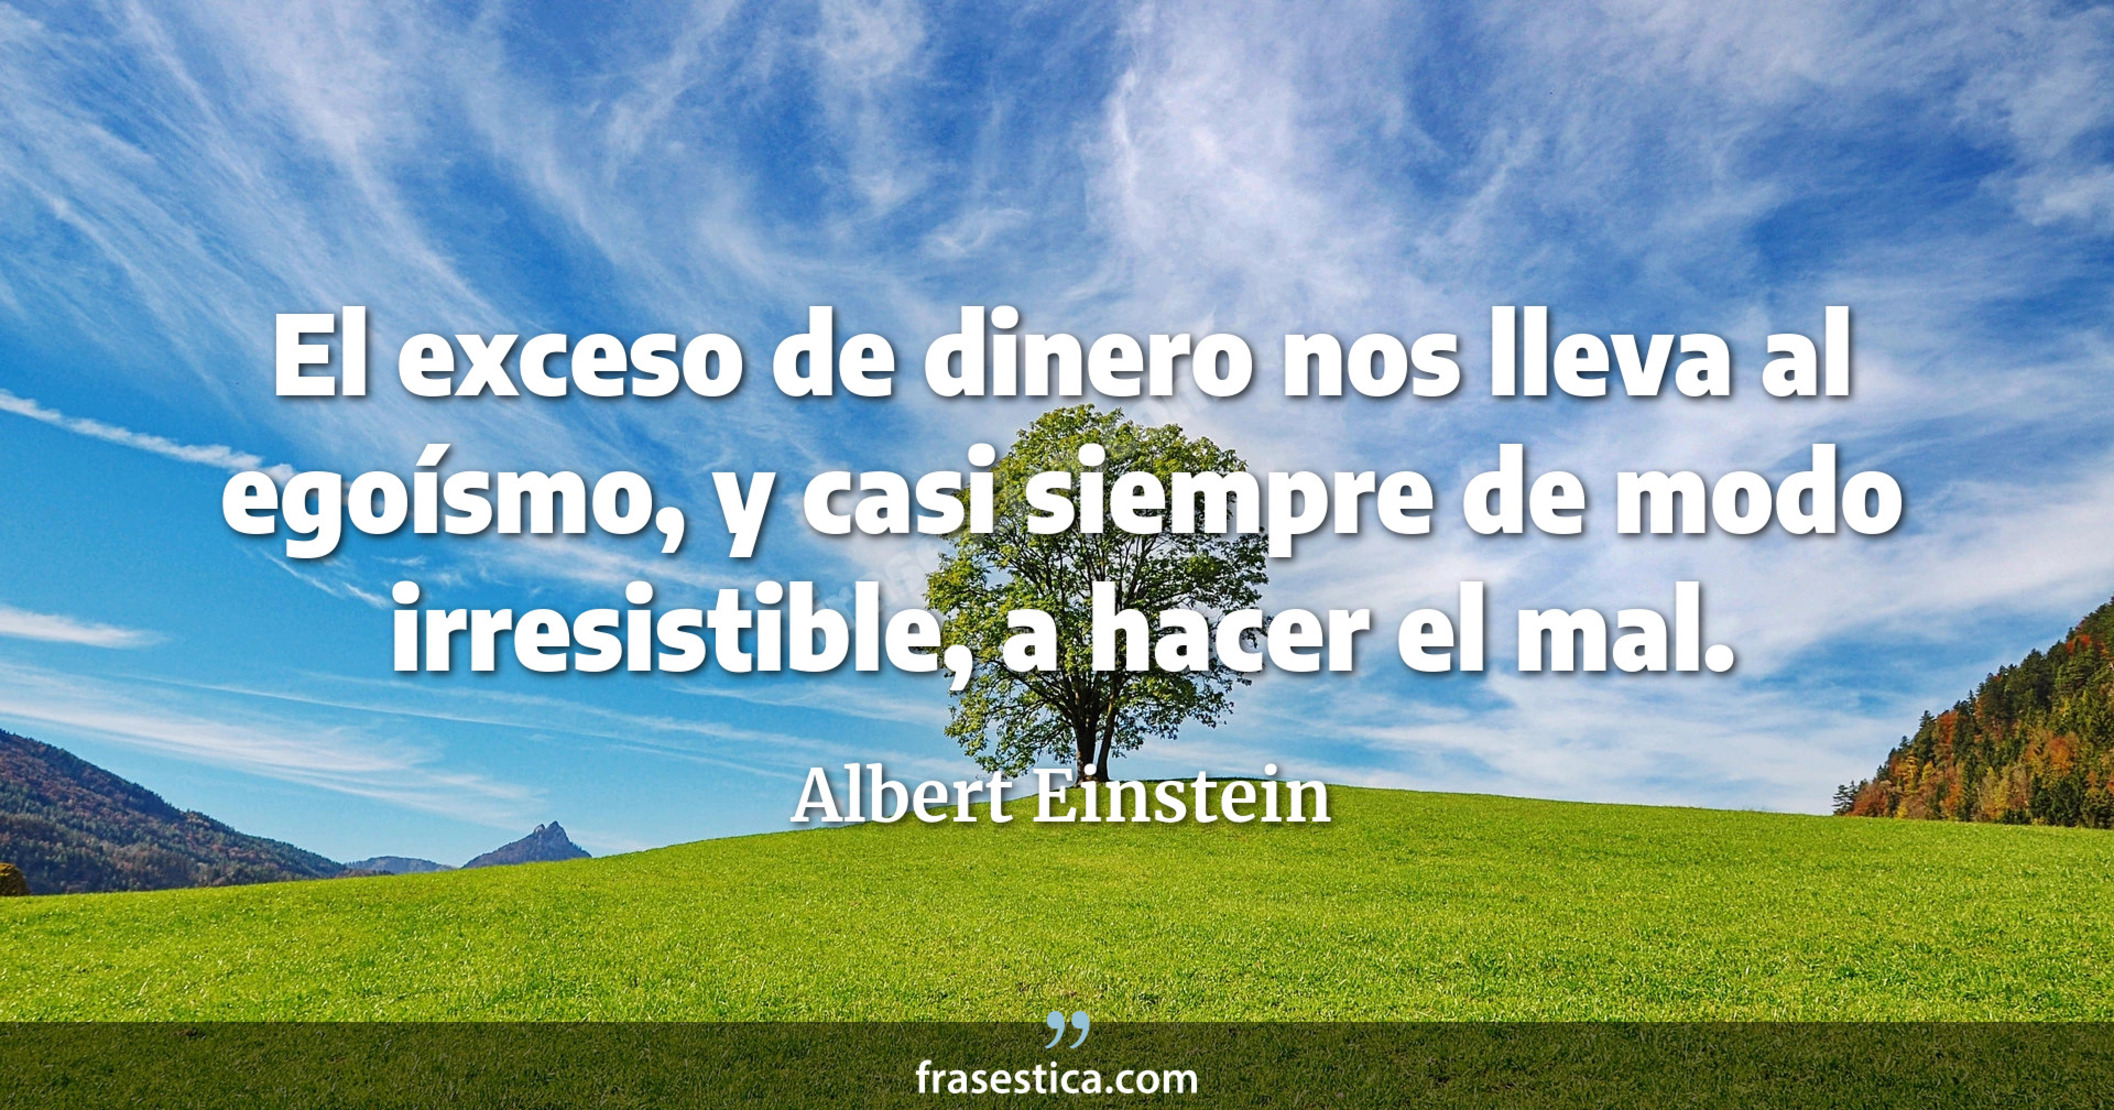 El exceso de dinero nos lleva al egoísmo, y casi siempre de modo irresistible, a hacer el mal. - Albert Einstein